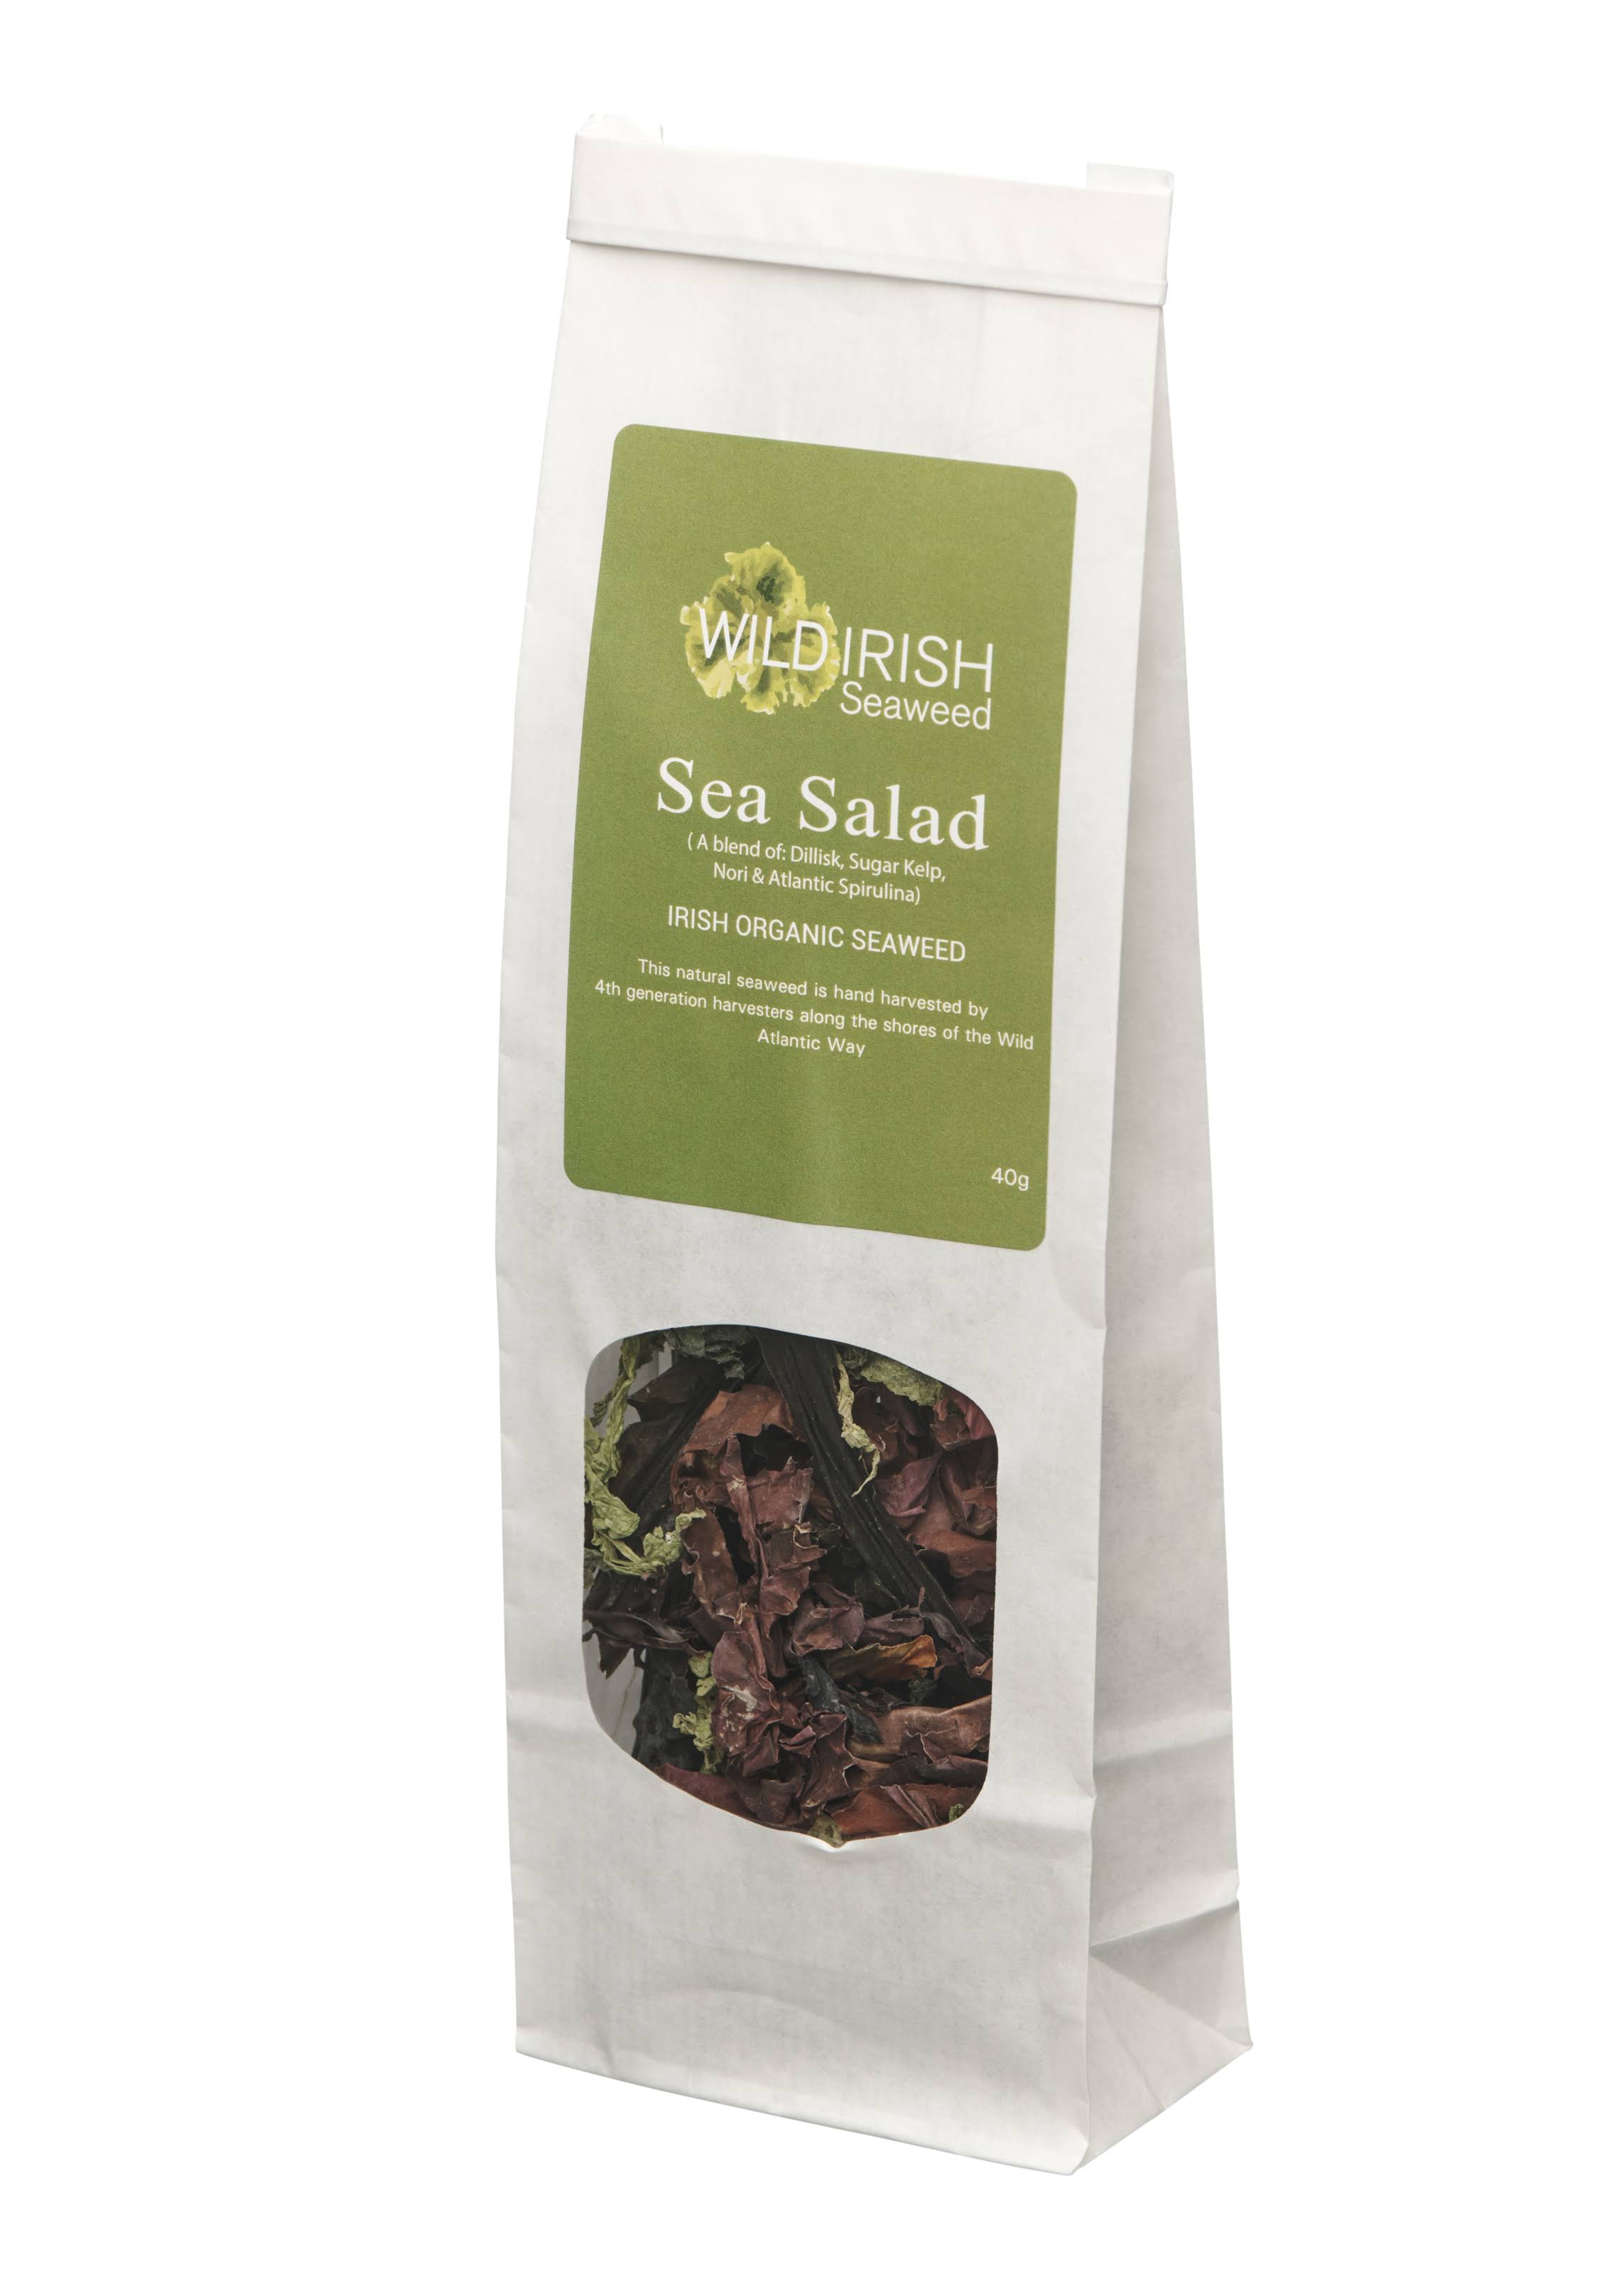 Wild Irish Sea Veg Sea Salad